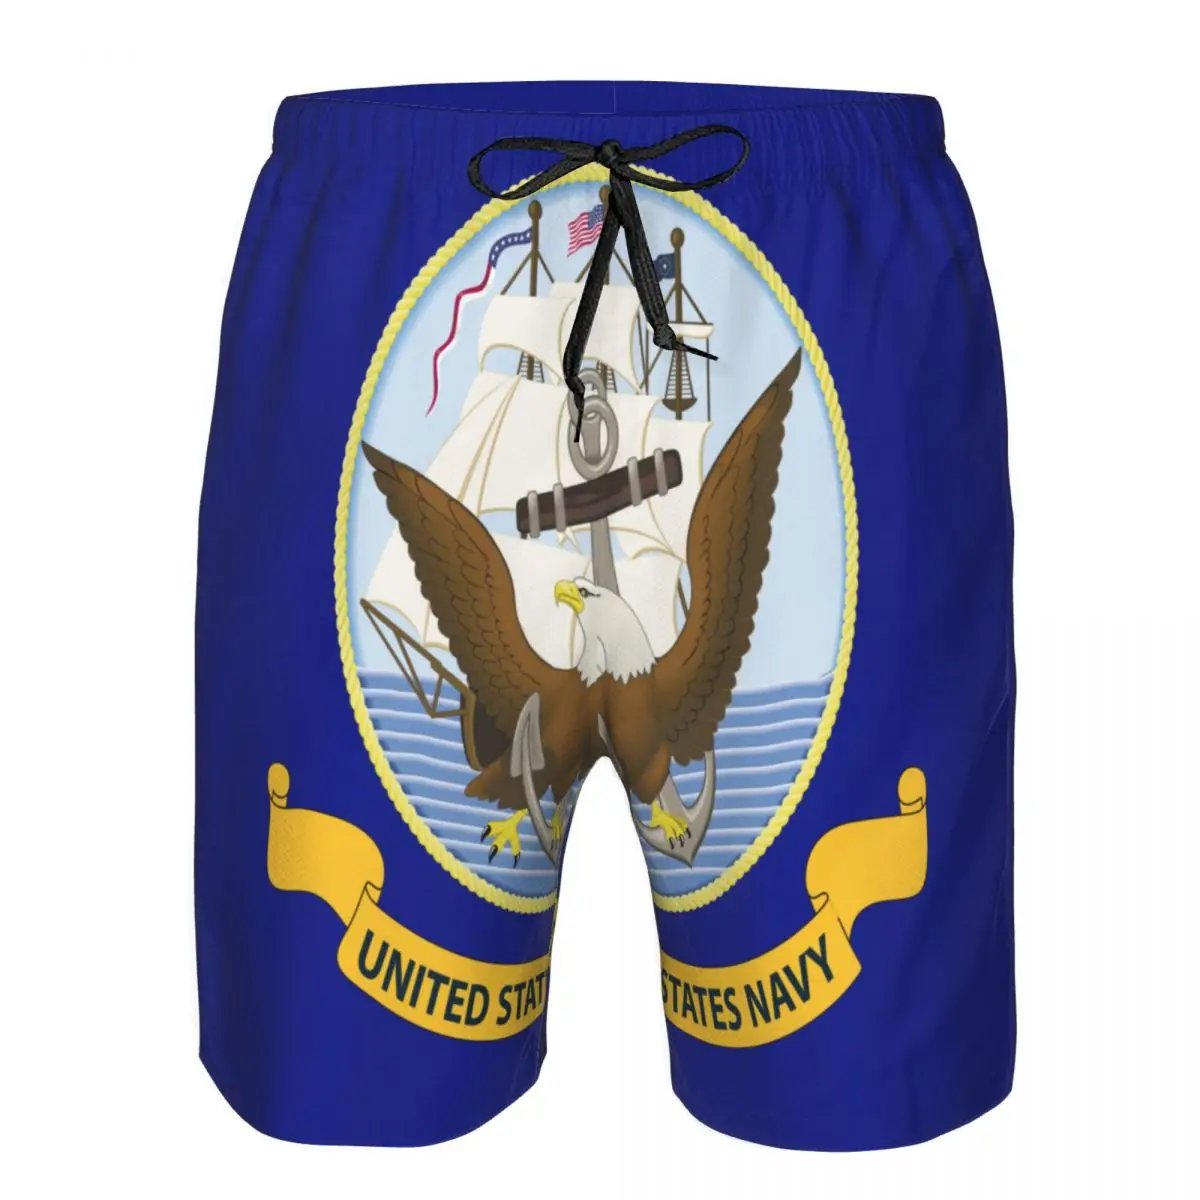 

Мужские плавательные шорты с флагом, мужские плавки, купальник, Мужская пляжная одежда, короткие шорты, бермуды, бордшорты